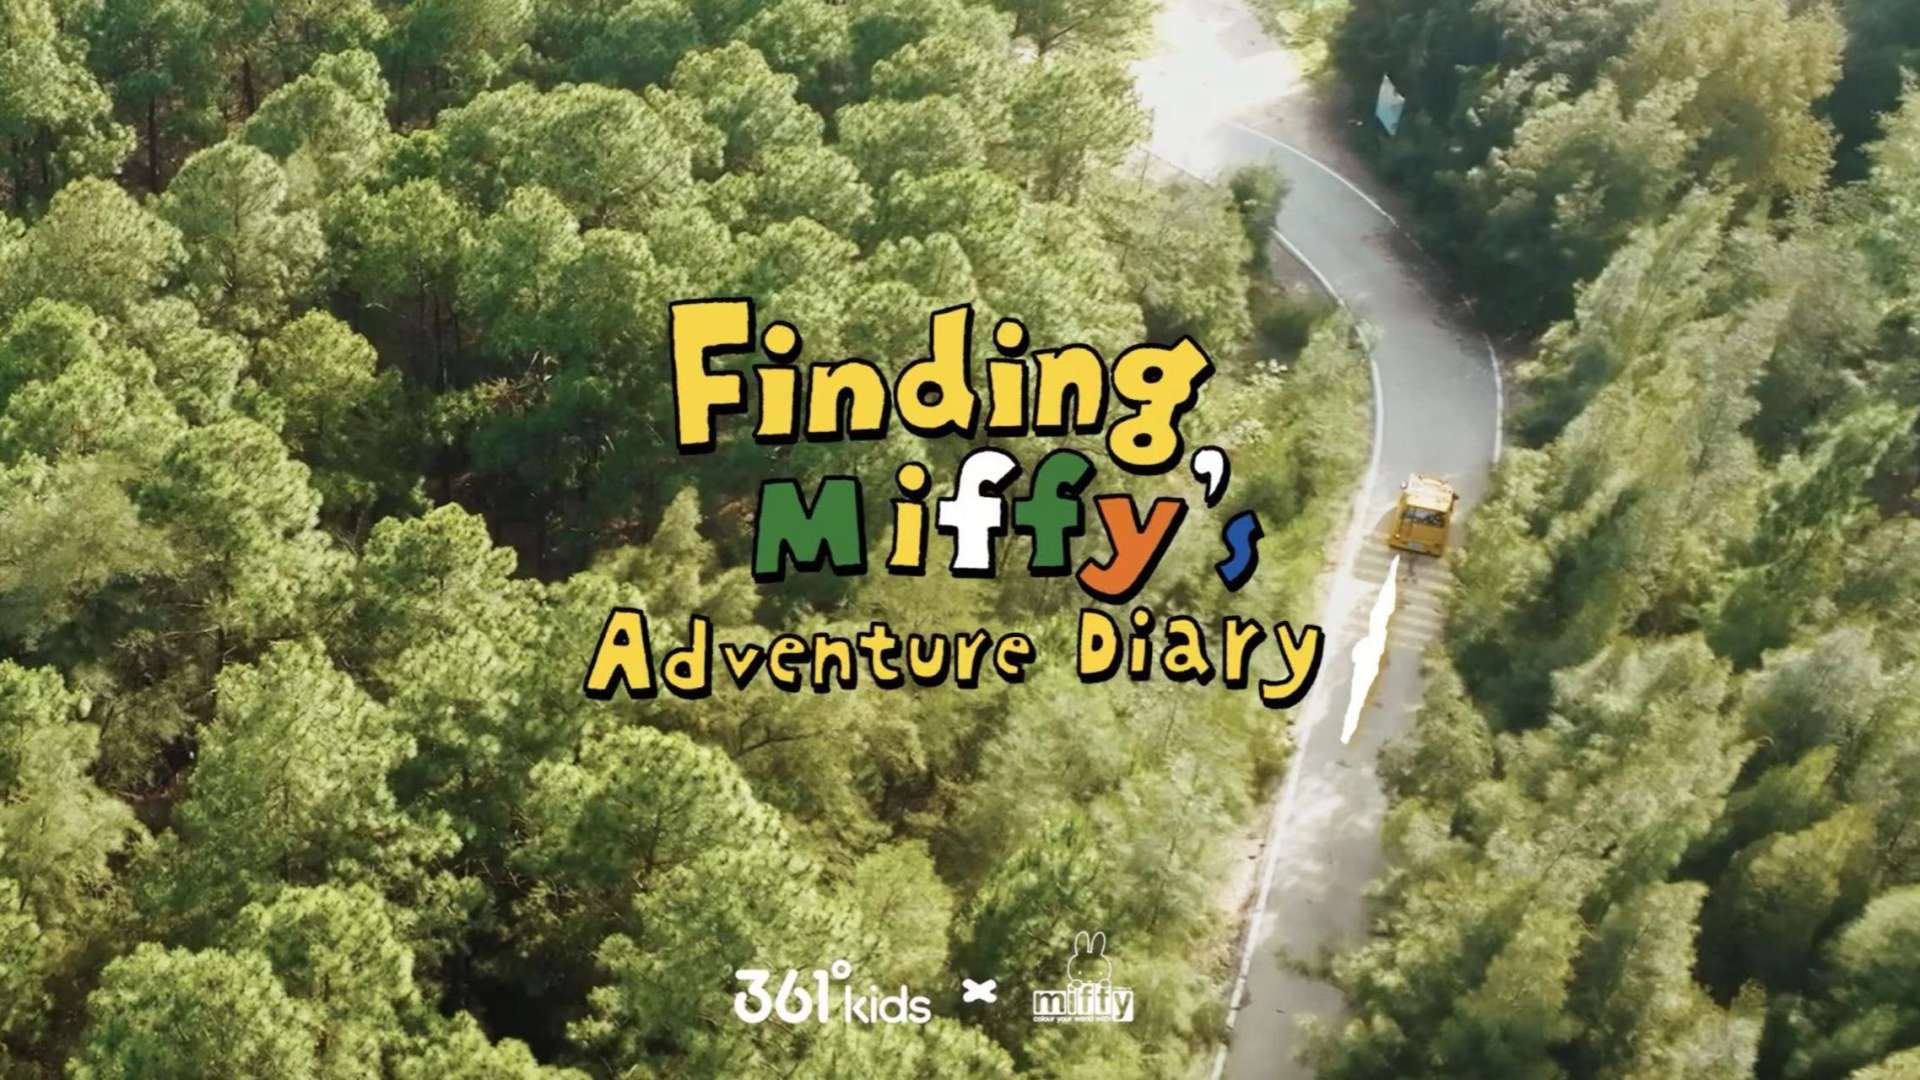 361°kids × Miffy